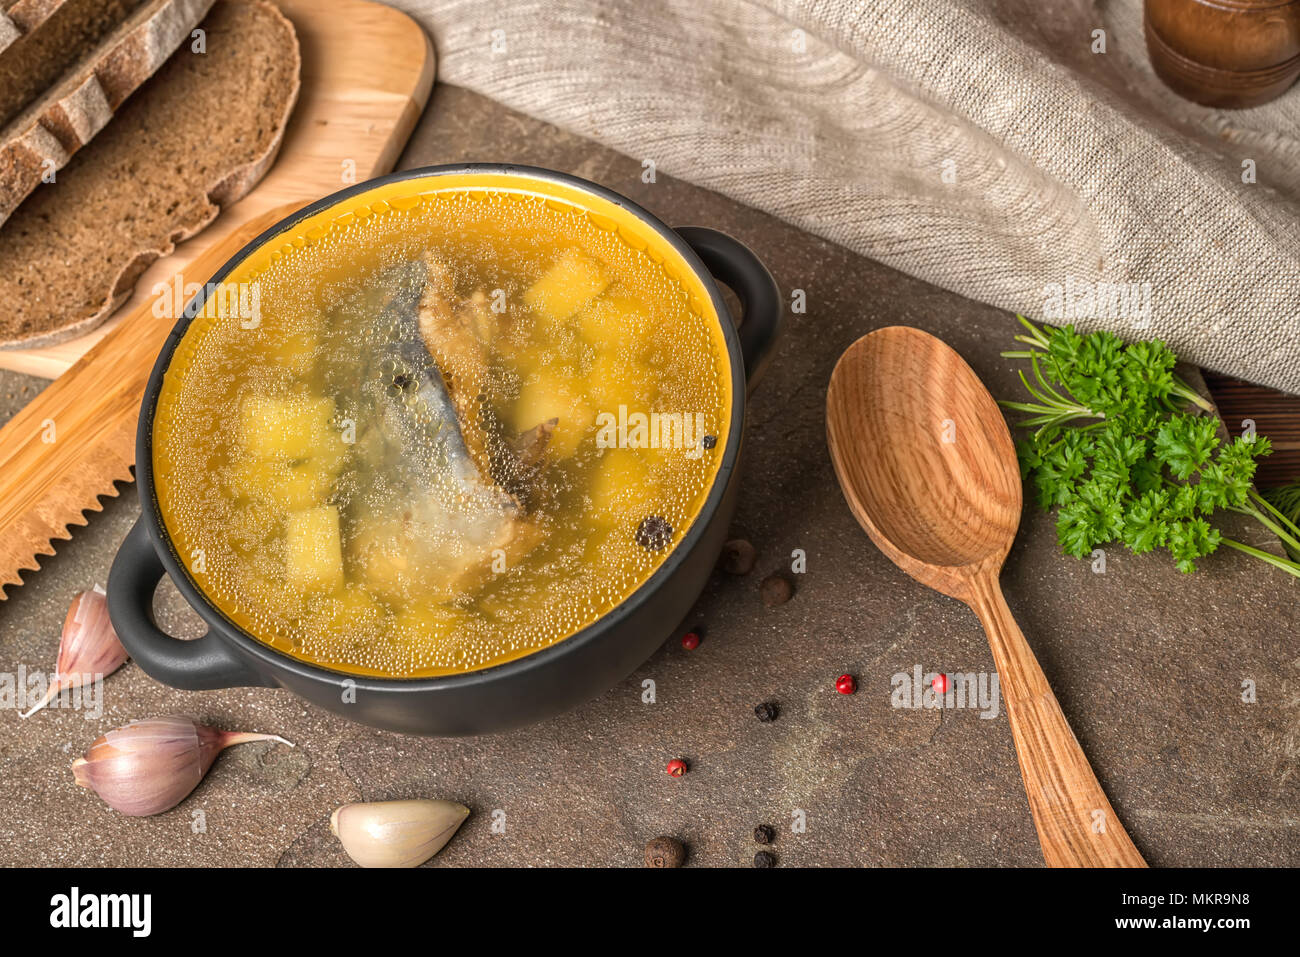 Trasparente la zuppa di pesce con lo storione, patate in piastra nera, decorato di aglio, prezzemolo in foglie, il cucchiaio di legno e tagliate il pane di segale, cucina etnica Foto Stock